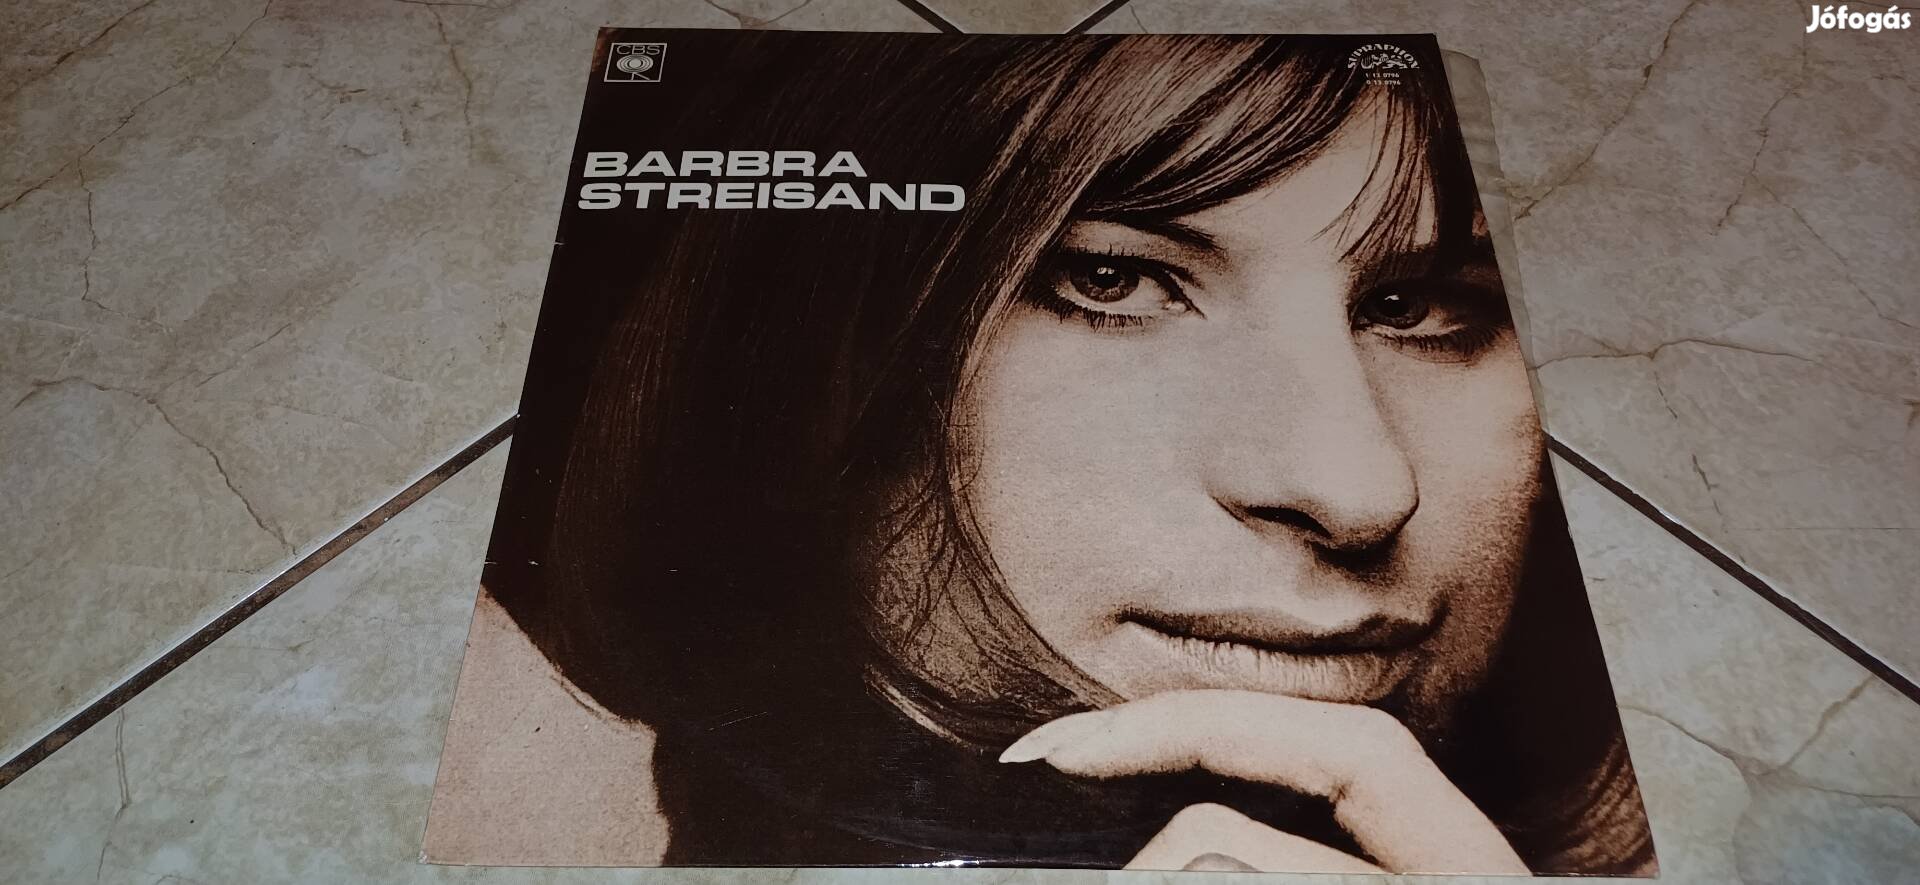 Barbra Streisand bakelit lemez